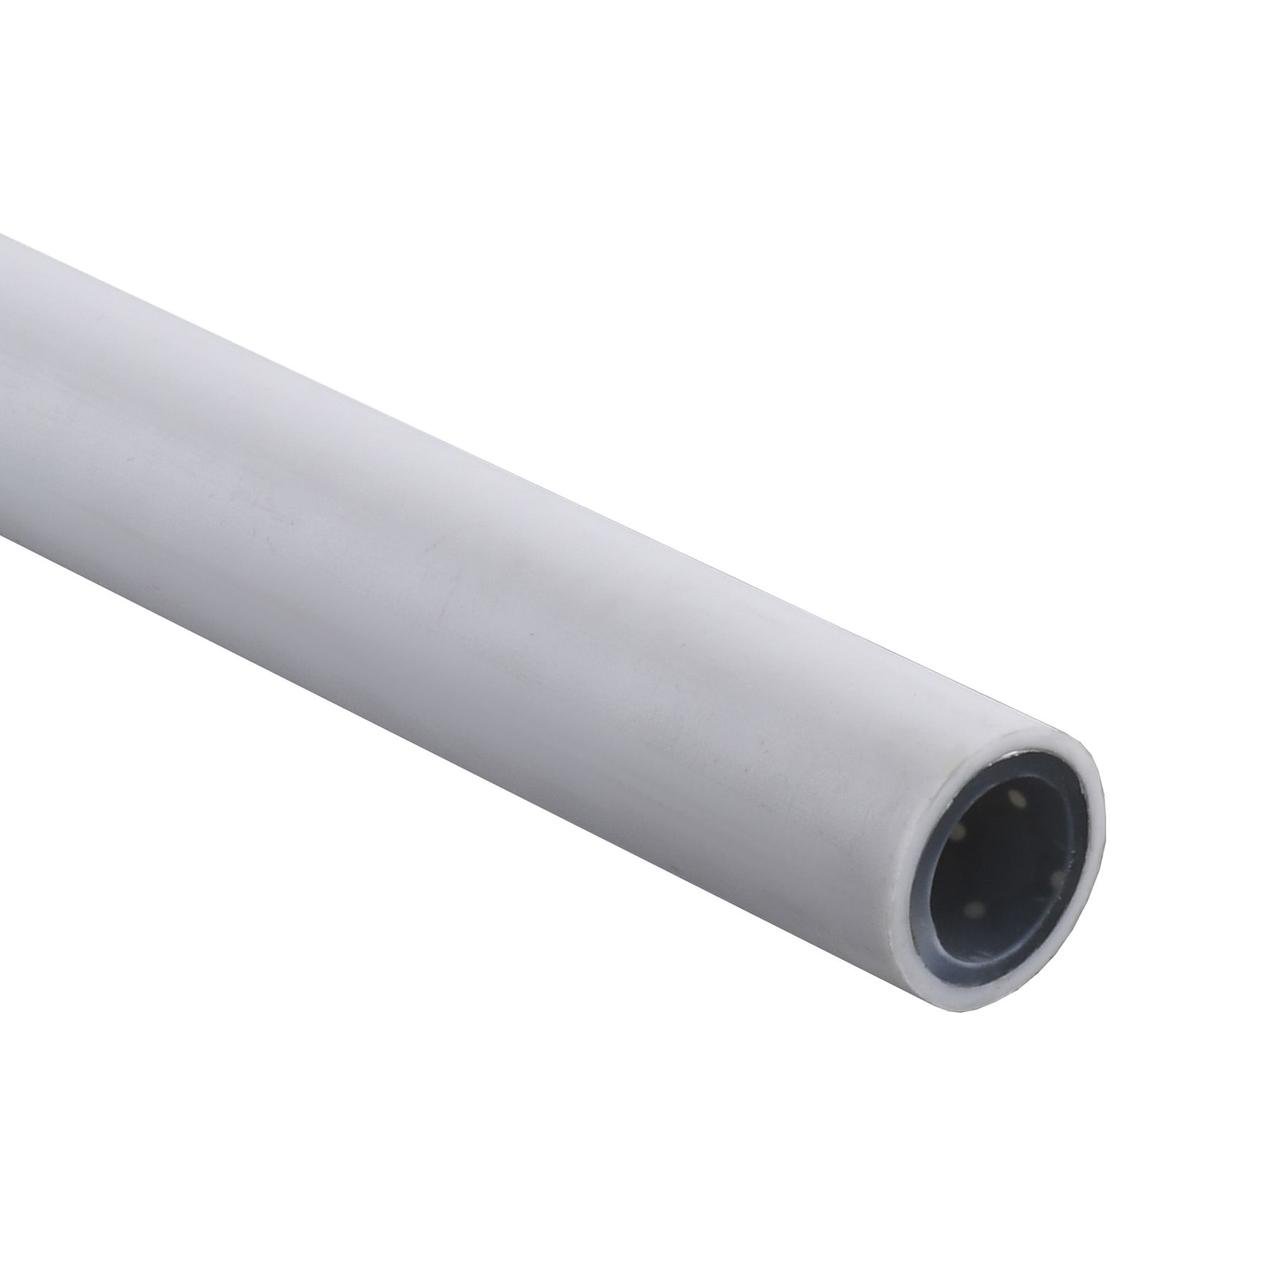 Труба Kalde PPR Super Pipe 20 mm PN 25 с алюминиевой фольгой(белая)